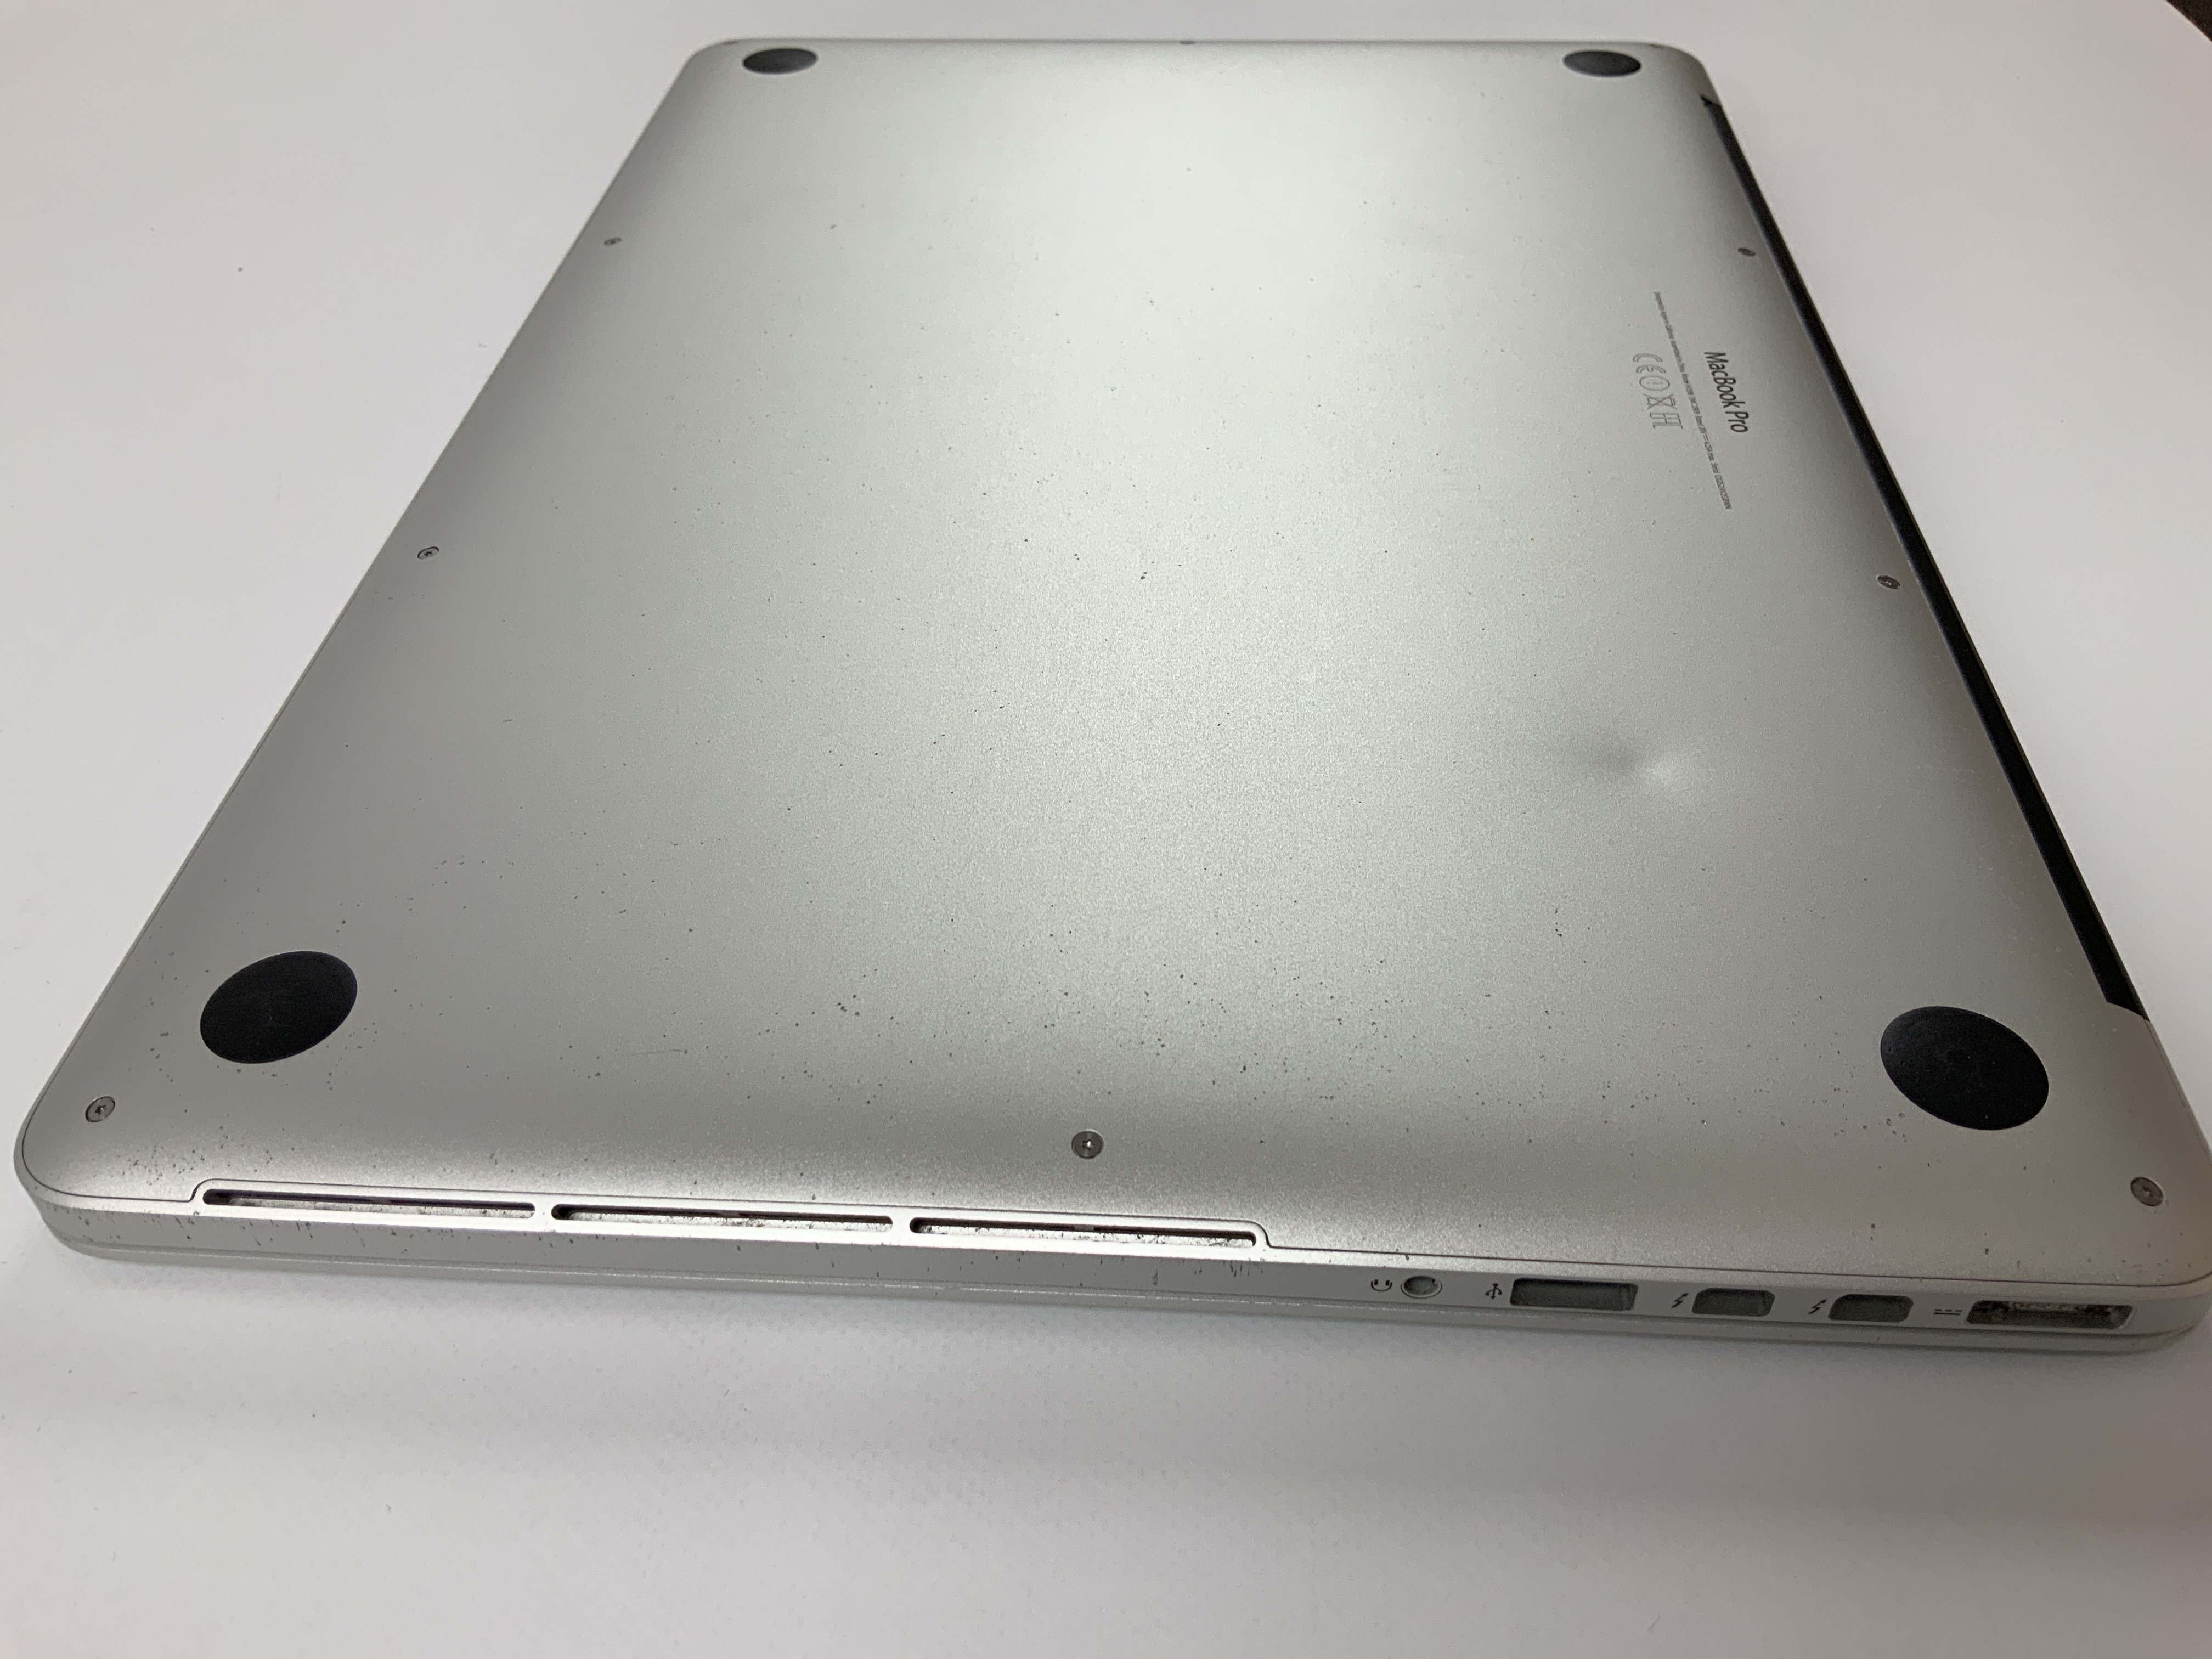 MacBook Pro Retina 15" Mid 2015 (Intel Quad-Core i7 2.5 GHz 16 GB RAM 256 GB SSD), Intel Quad-Core i7 2.5 GHz, 16 GB RAM, 256 GB SSD, immagine 5